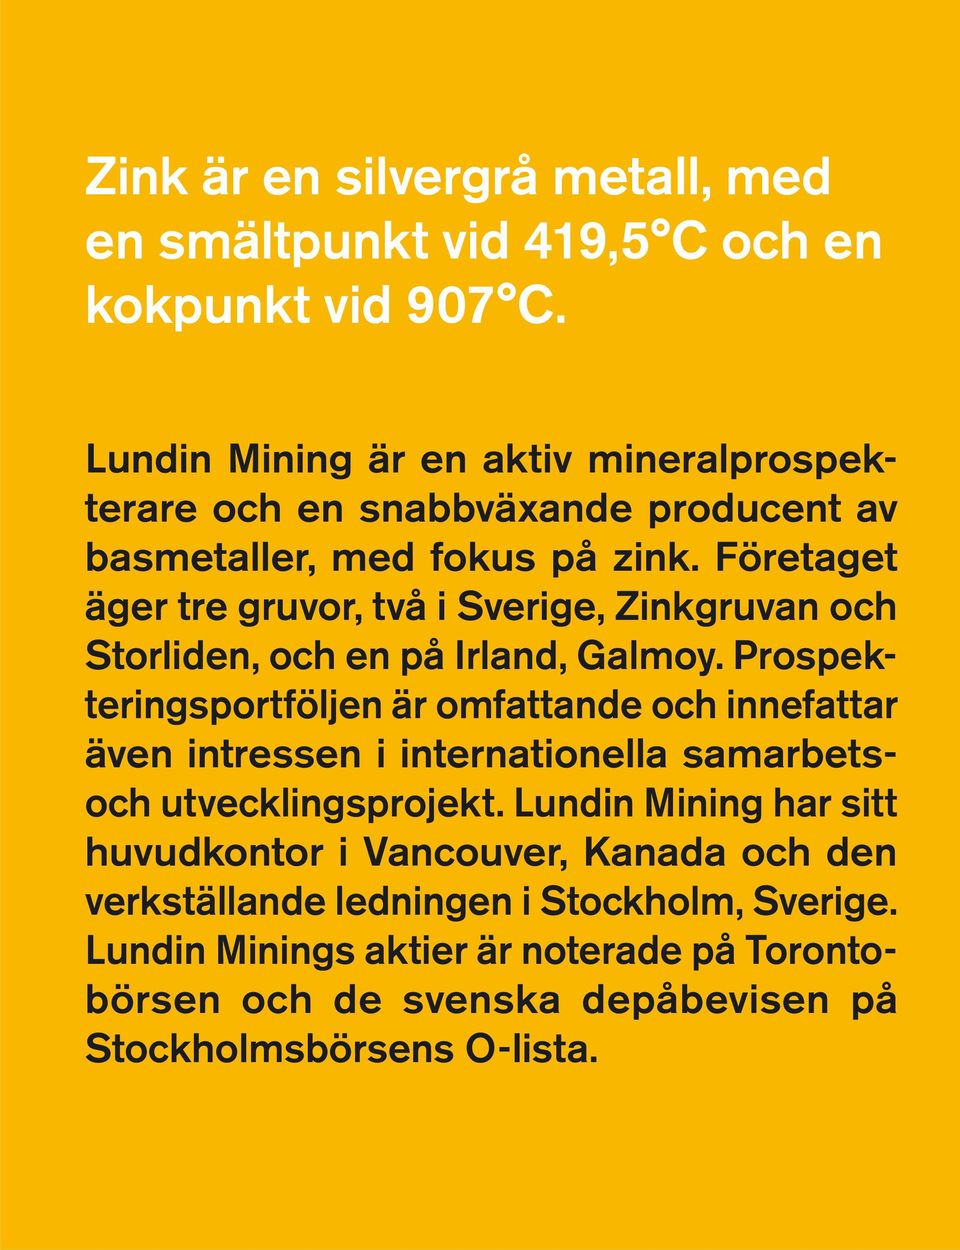 Företaget äger tre gruvor, två i Sverige, Zinkgruvan och Storliden, och en på Irland, Galmoy.